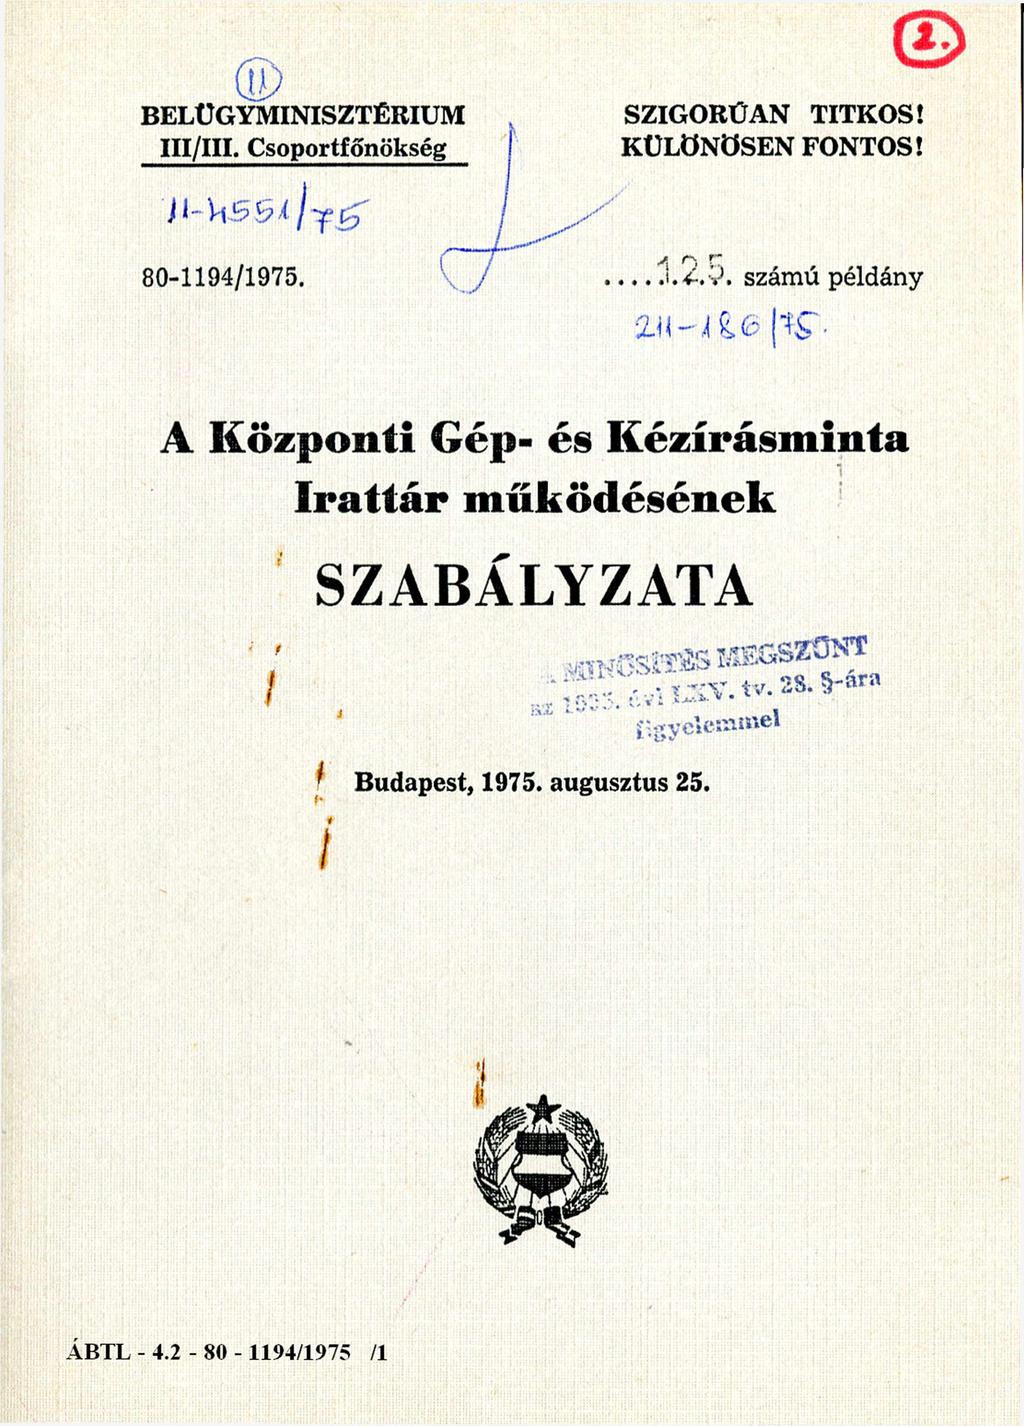 BELÜGYMINISZTÉRIUM III/III. Csoportfőnökség 11-4551/75 SZIGORÚAN TITKOS! KÜLÖNÖSEN FONTOS! 80-1194/1975.